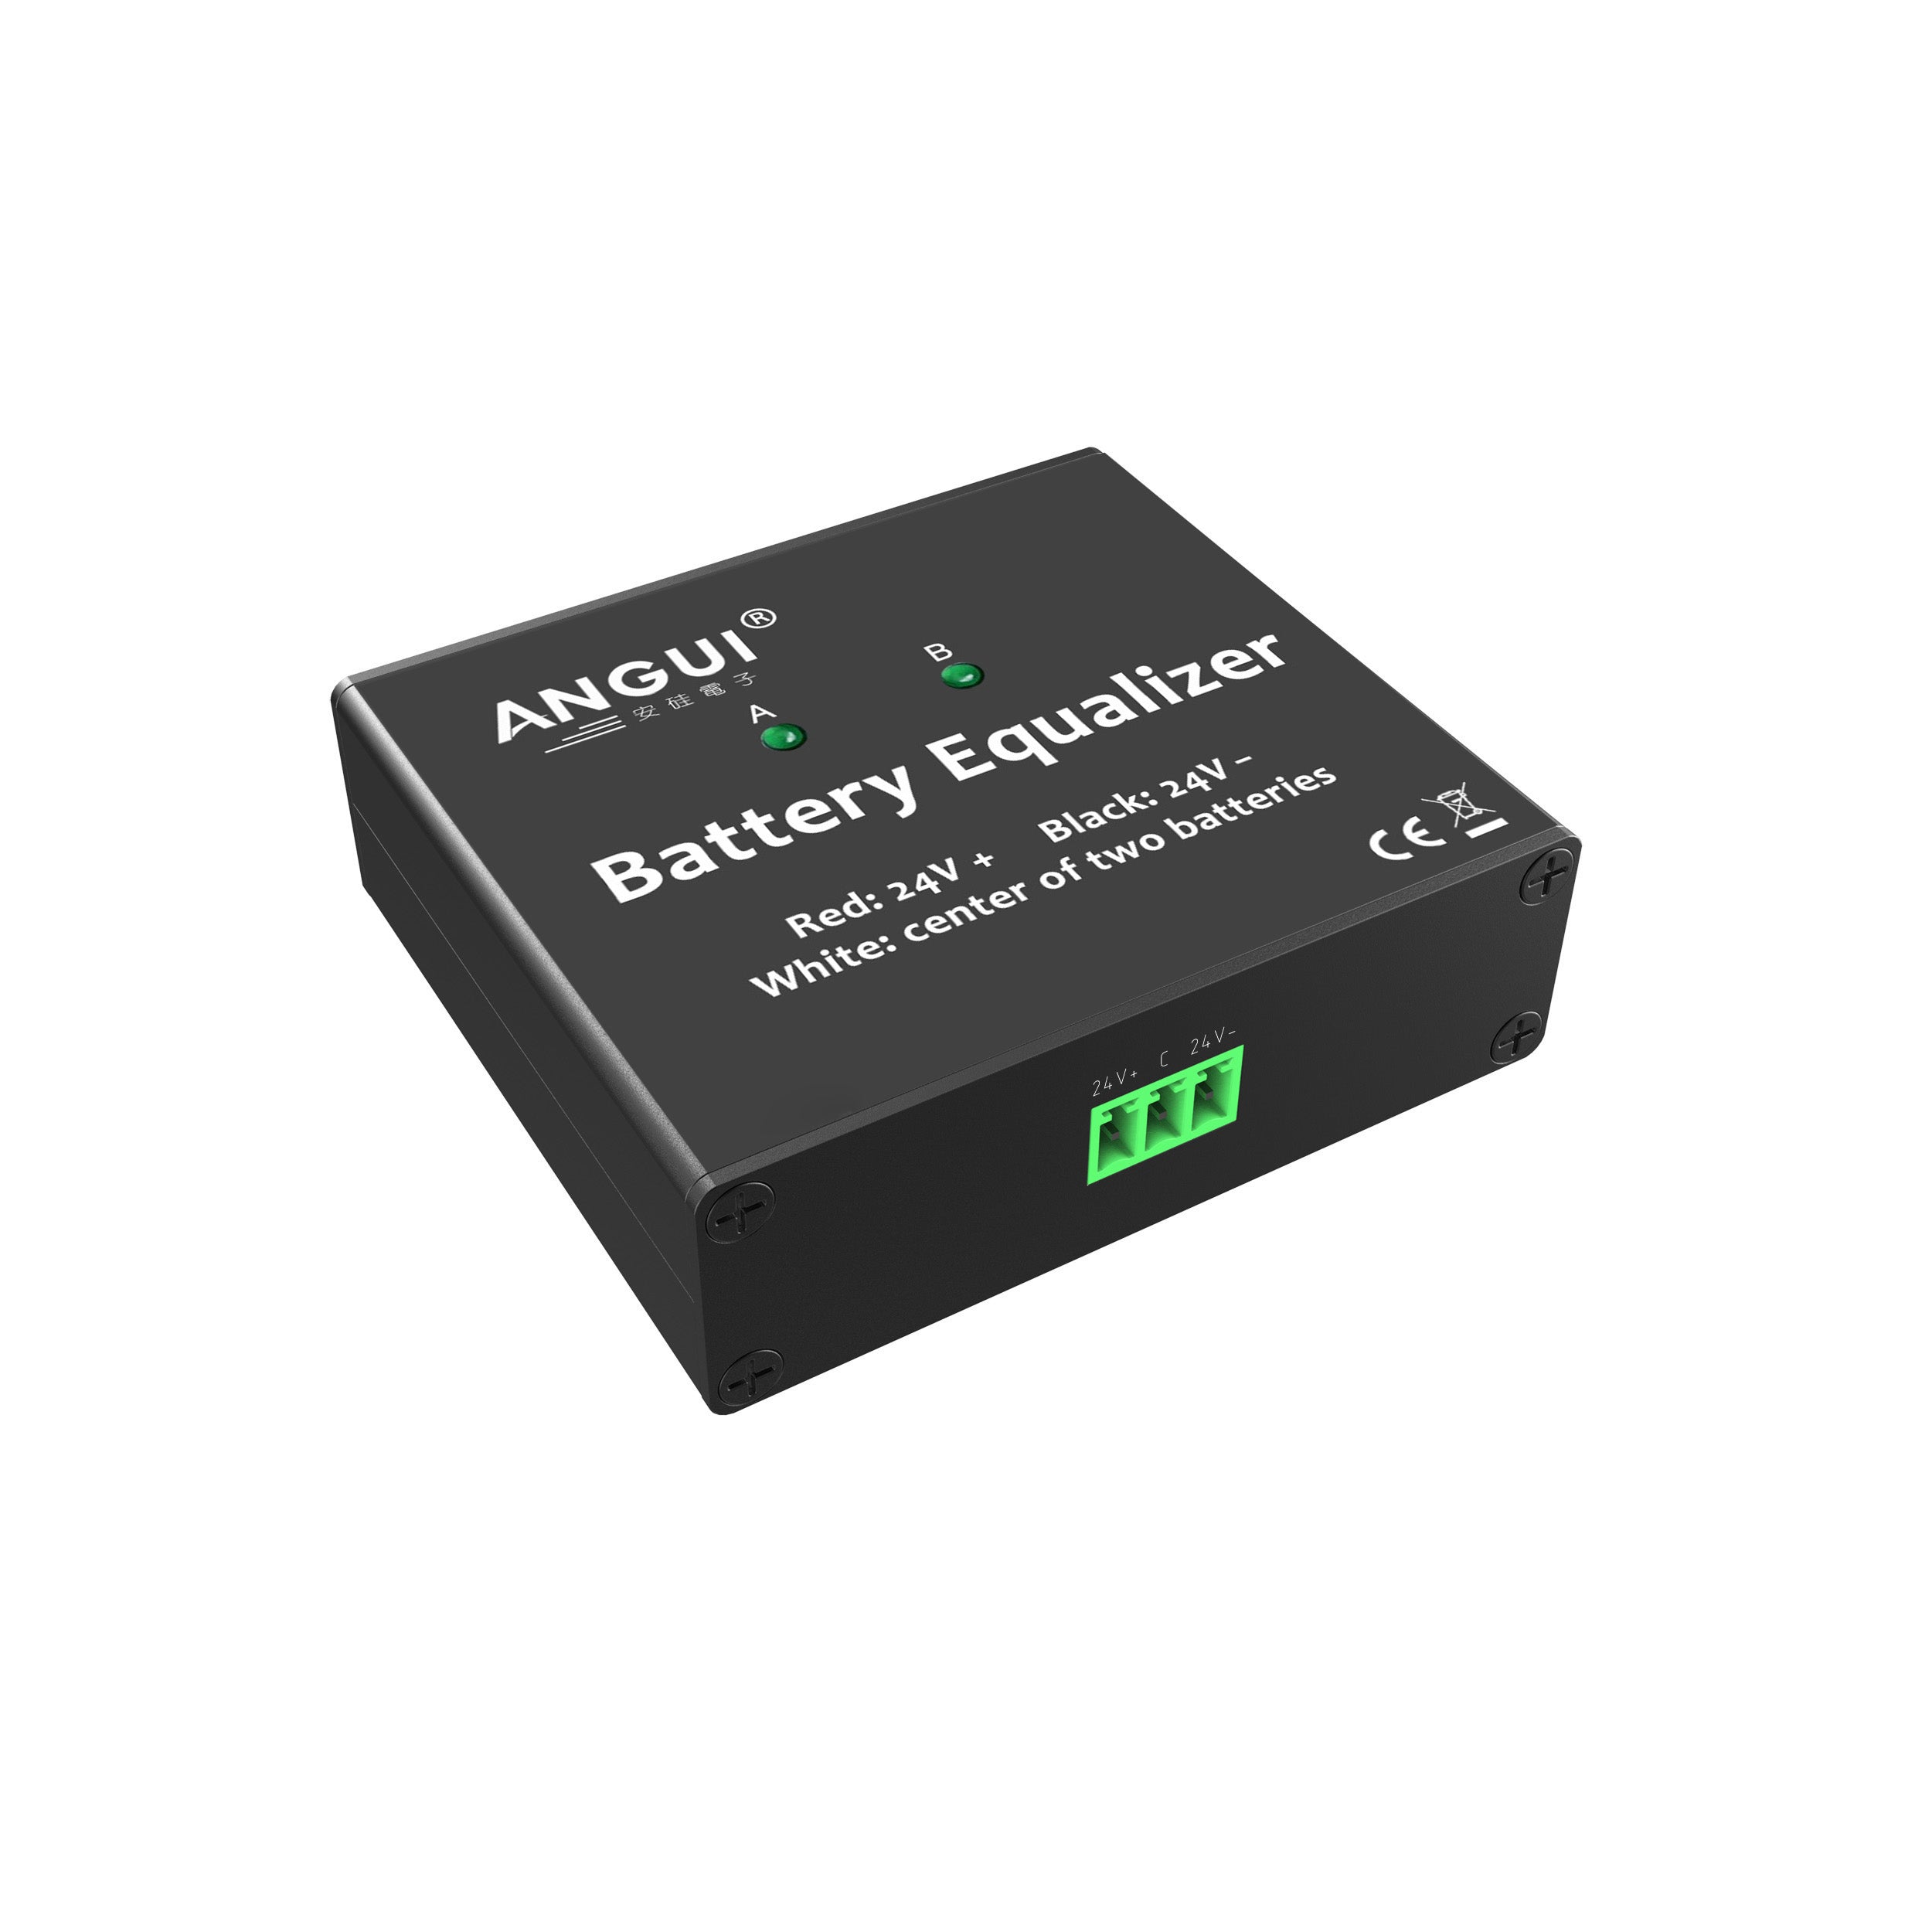 ANGUI Battery Equalizer FBA052S LED Display 2 x 12V Voltage Balancer